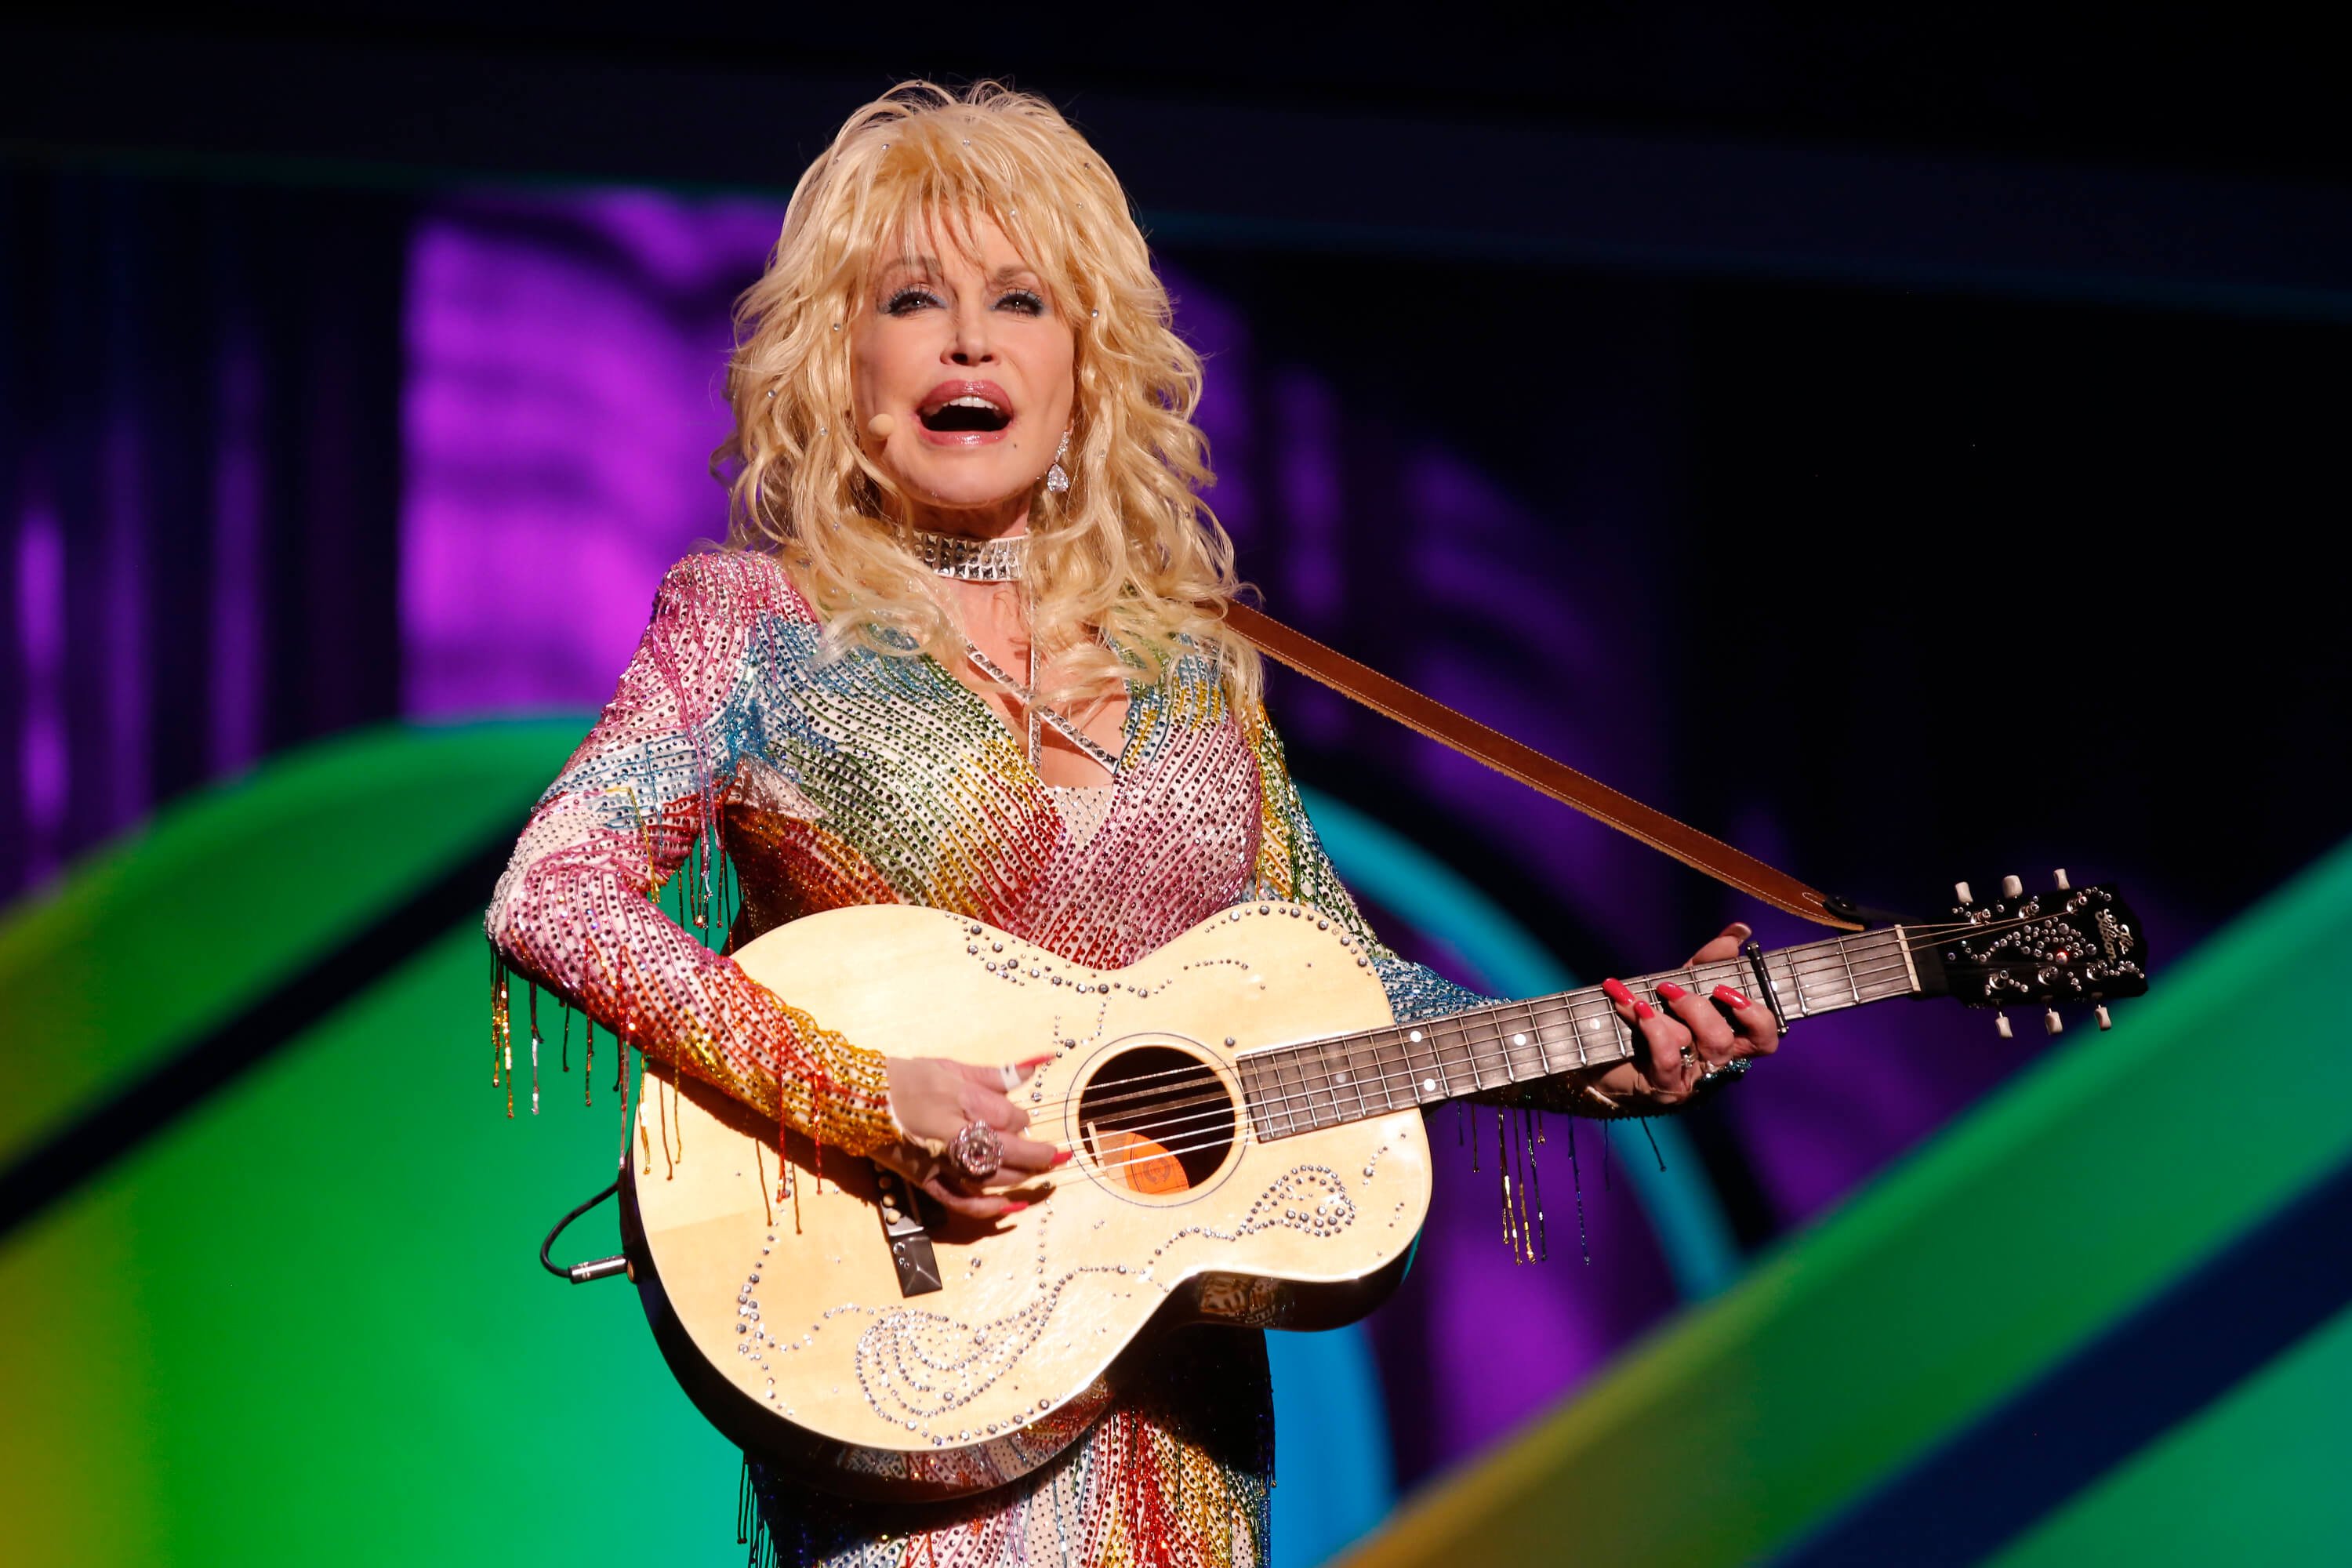 İşte Giydikten Sonra Dolly Parton'ın Giysilerine Ne Olur?